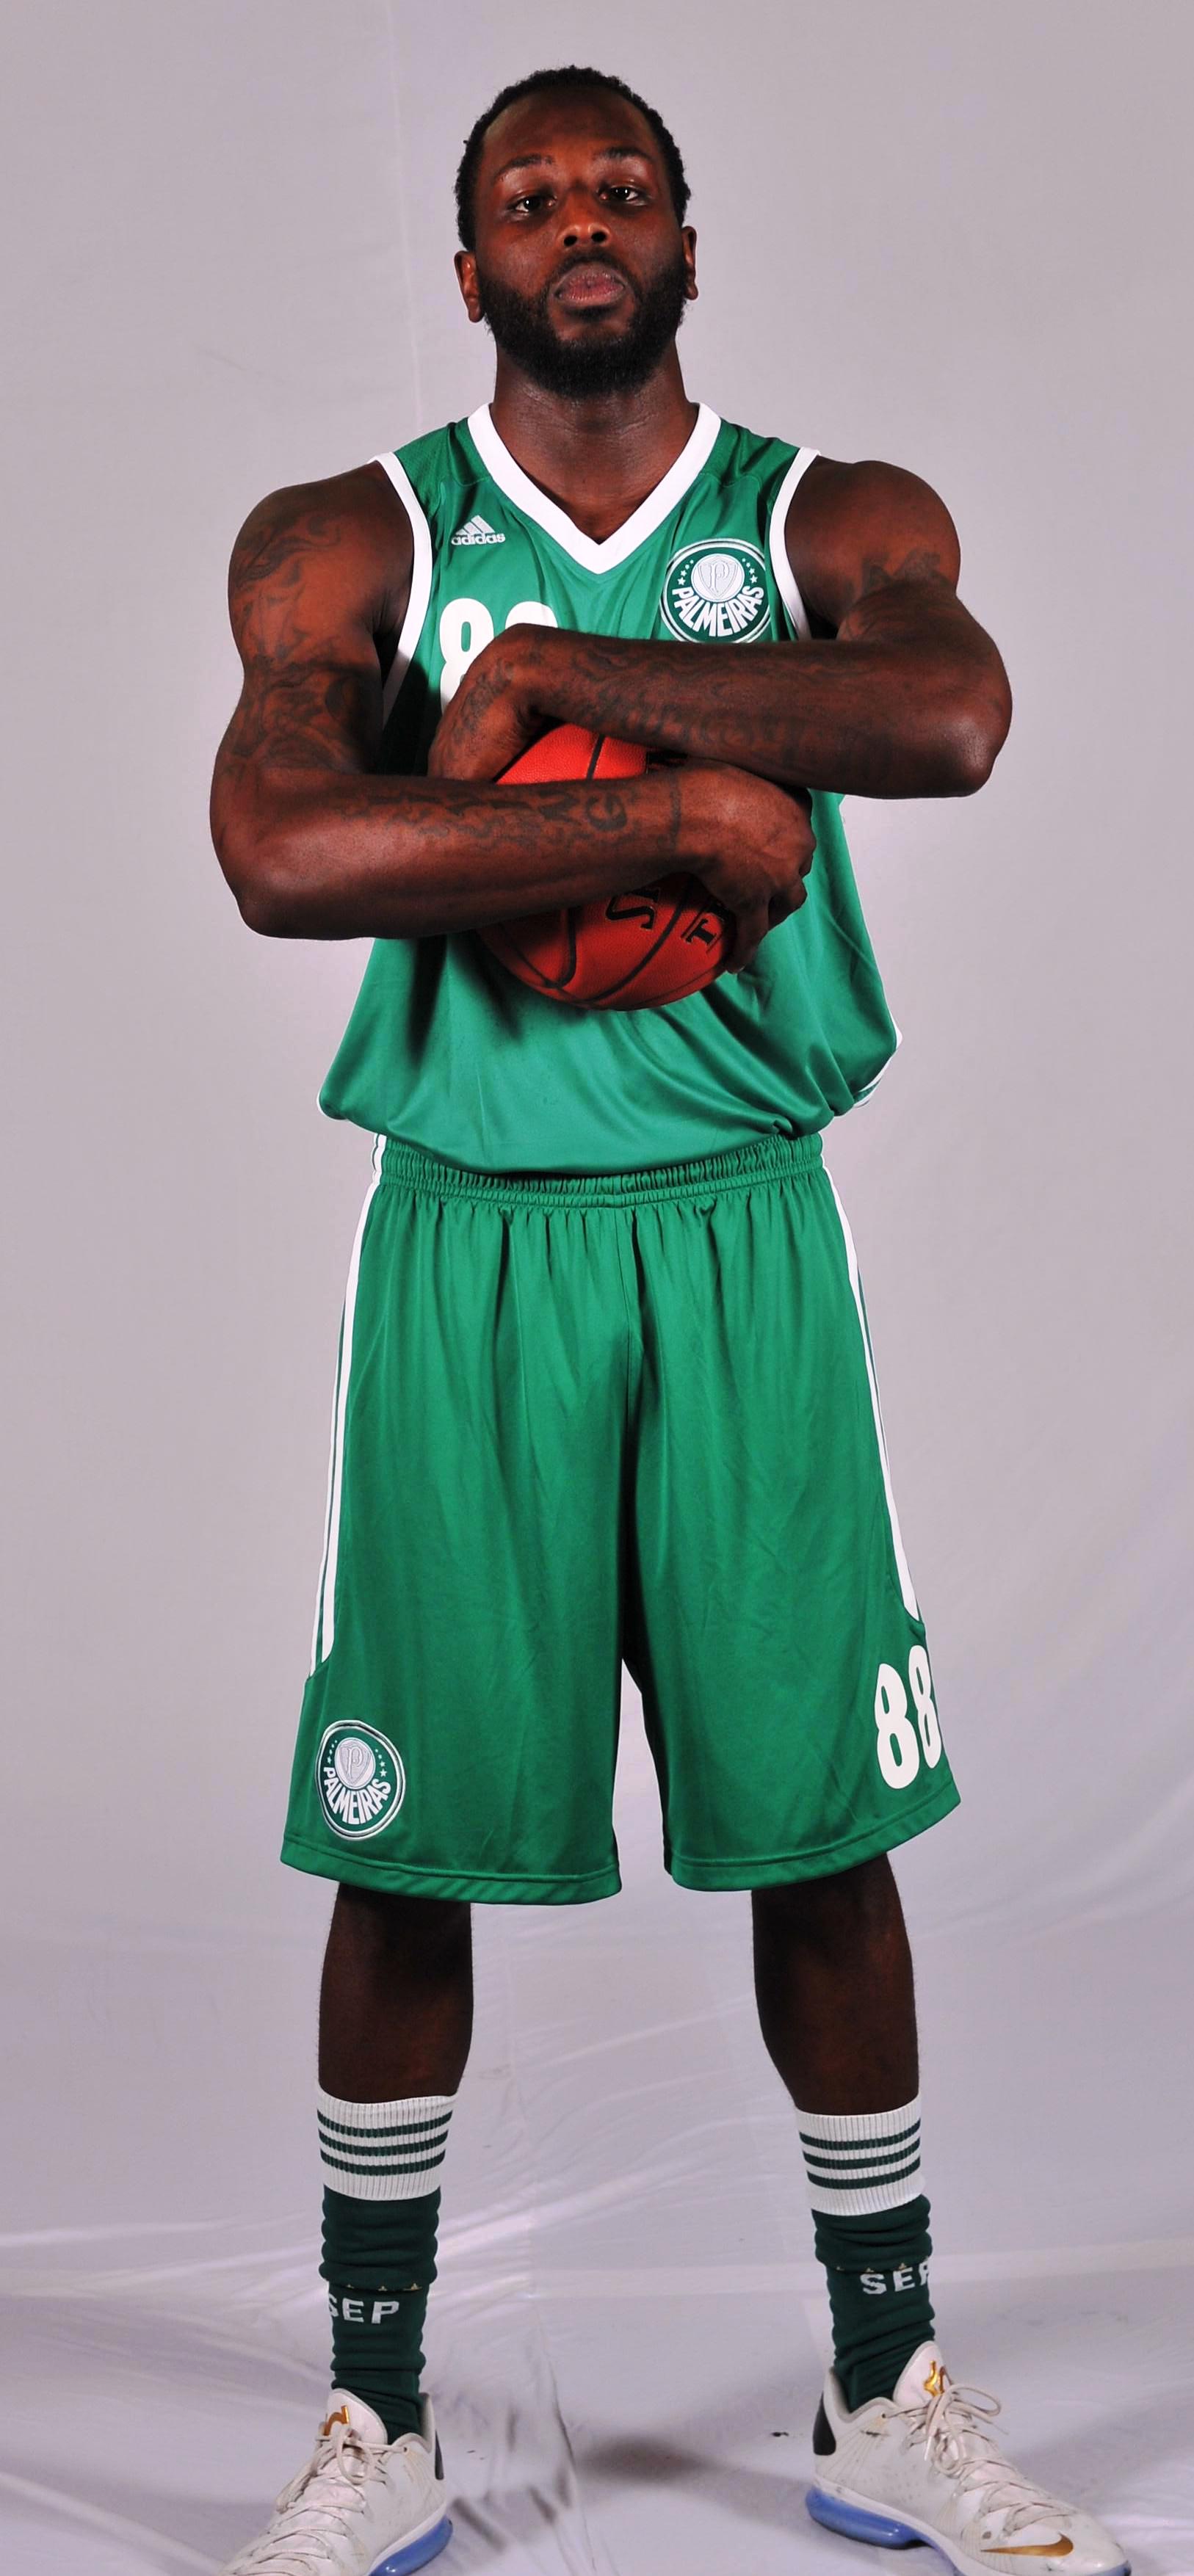 Tyrone é o terceiro jogador que mais rouba bolas no NBB (João Pires/LNB)